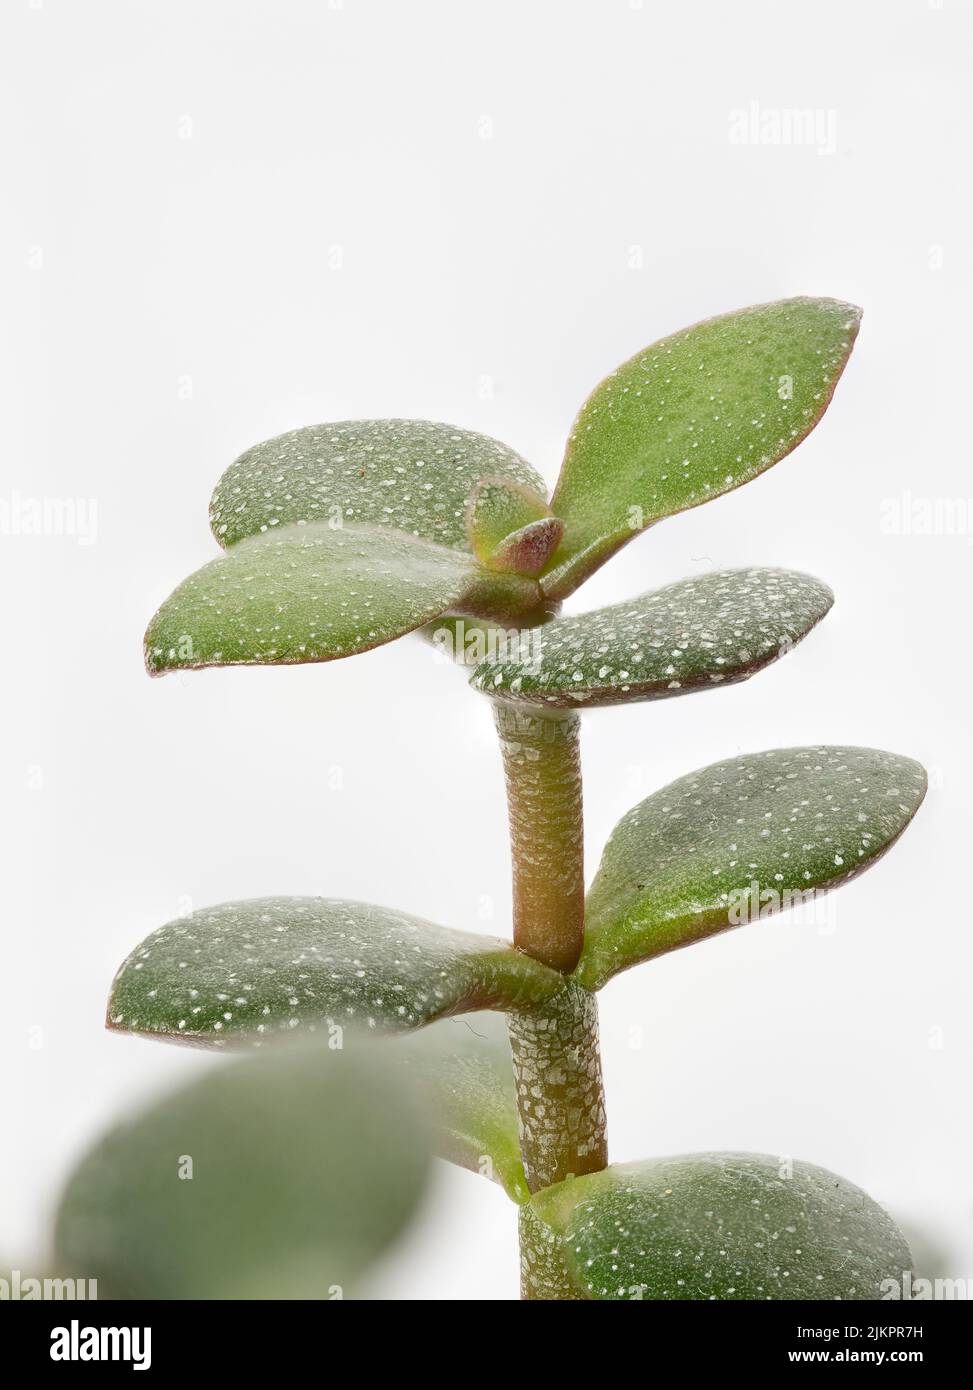 Crassula ovata jade plant immagini e fotografie stock ad alta risoluzione -  Alamy